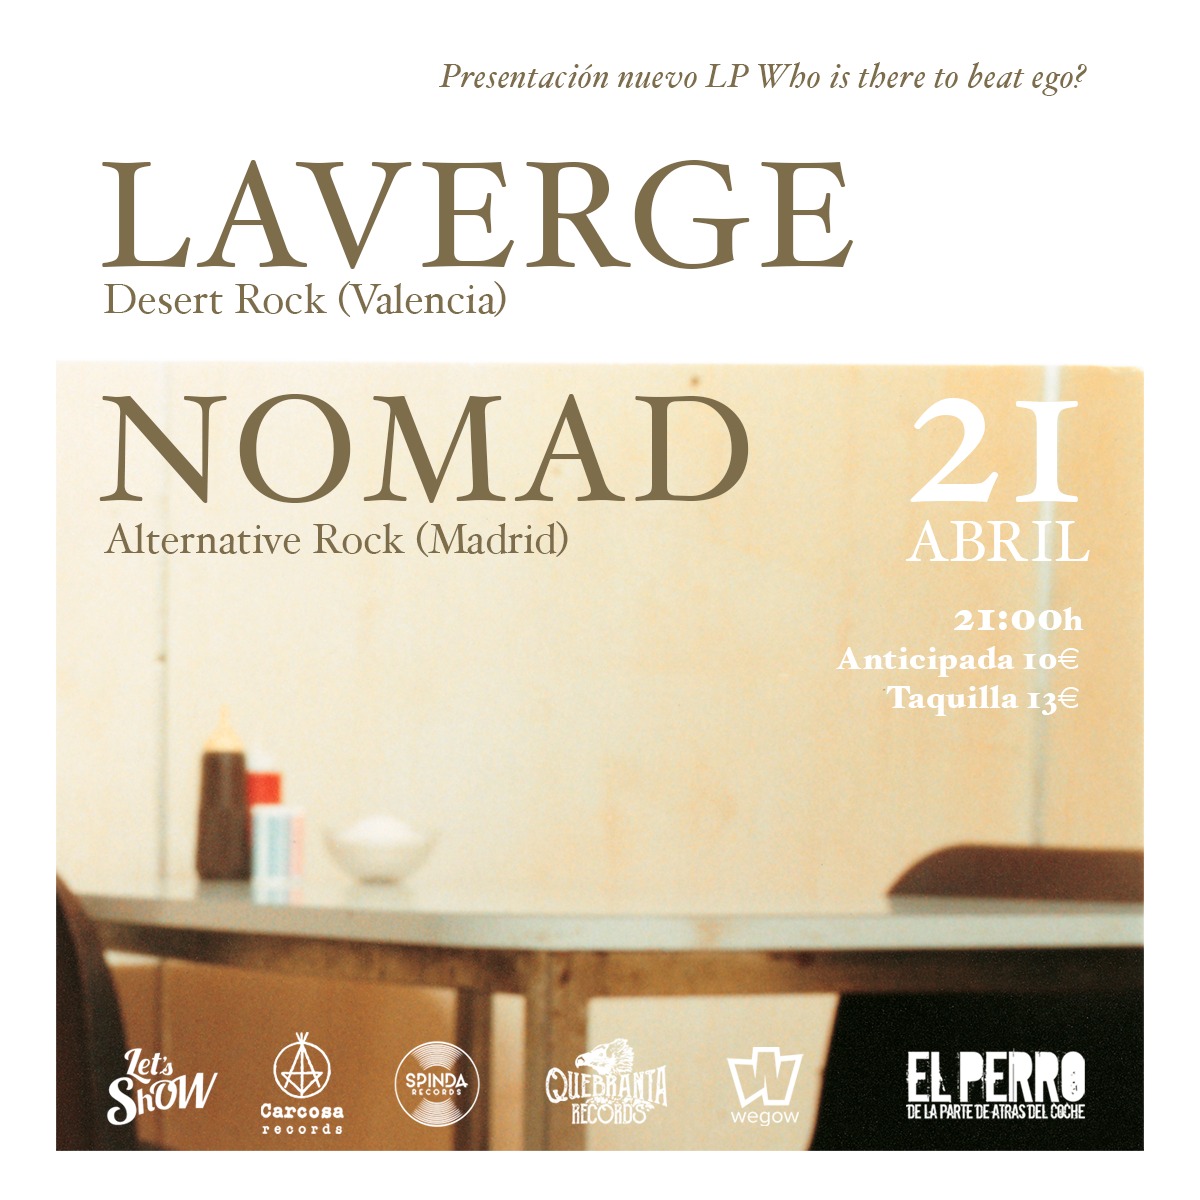 NOMAD + LAVERGE en la sala El Perro el viernes 21 abril